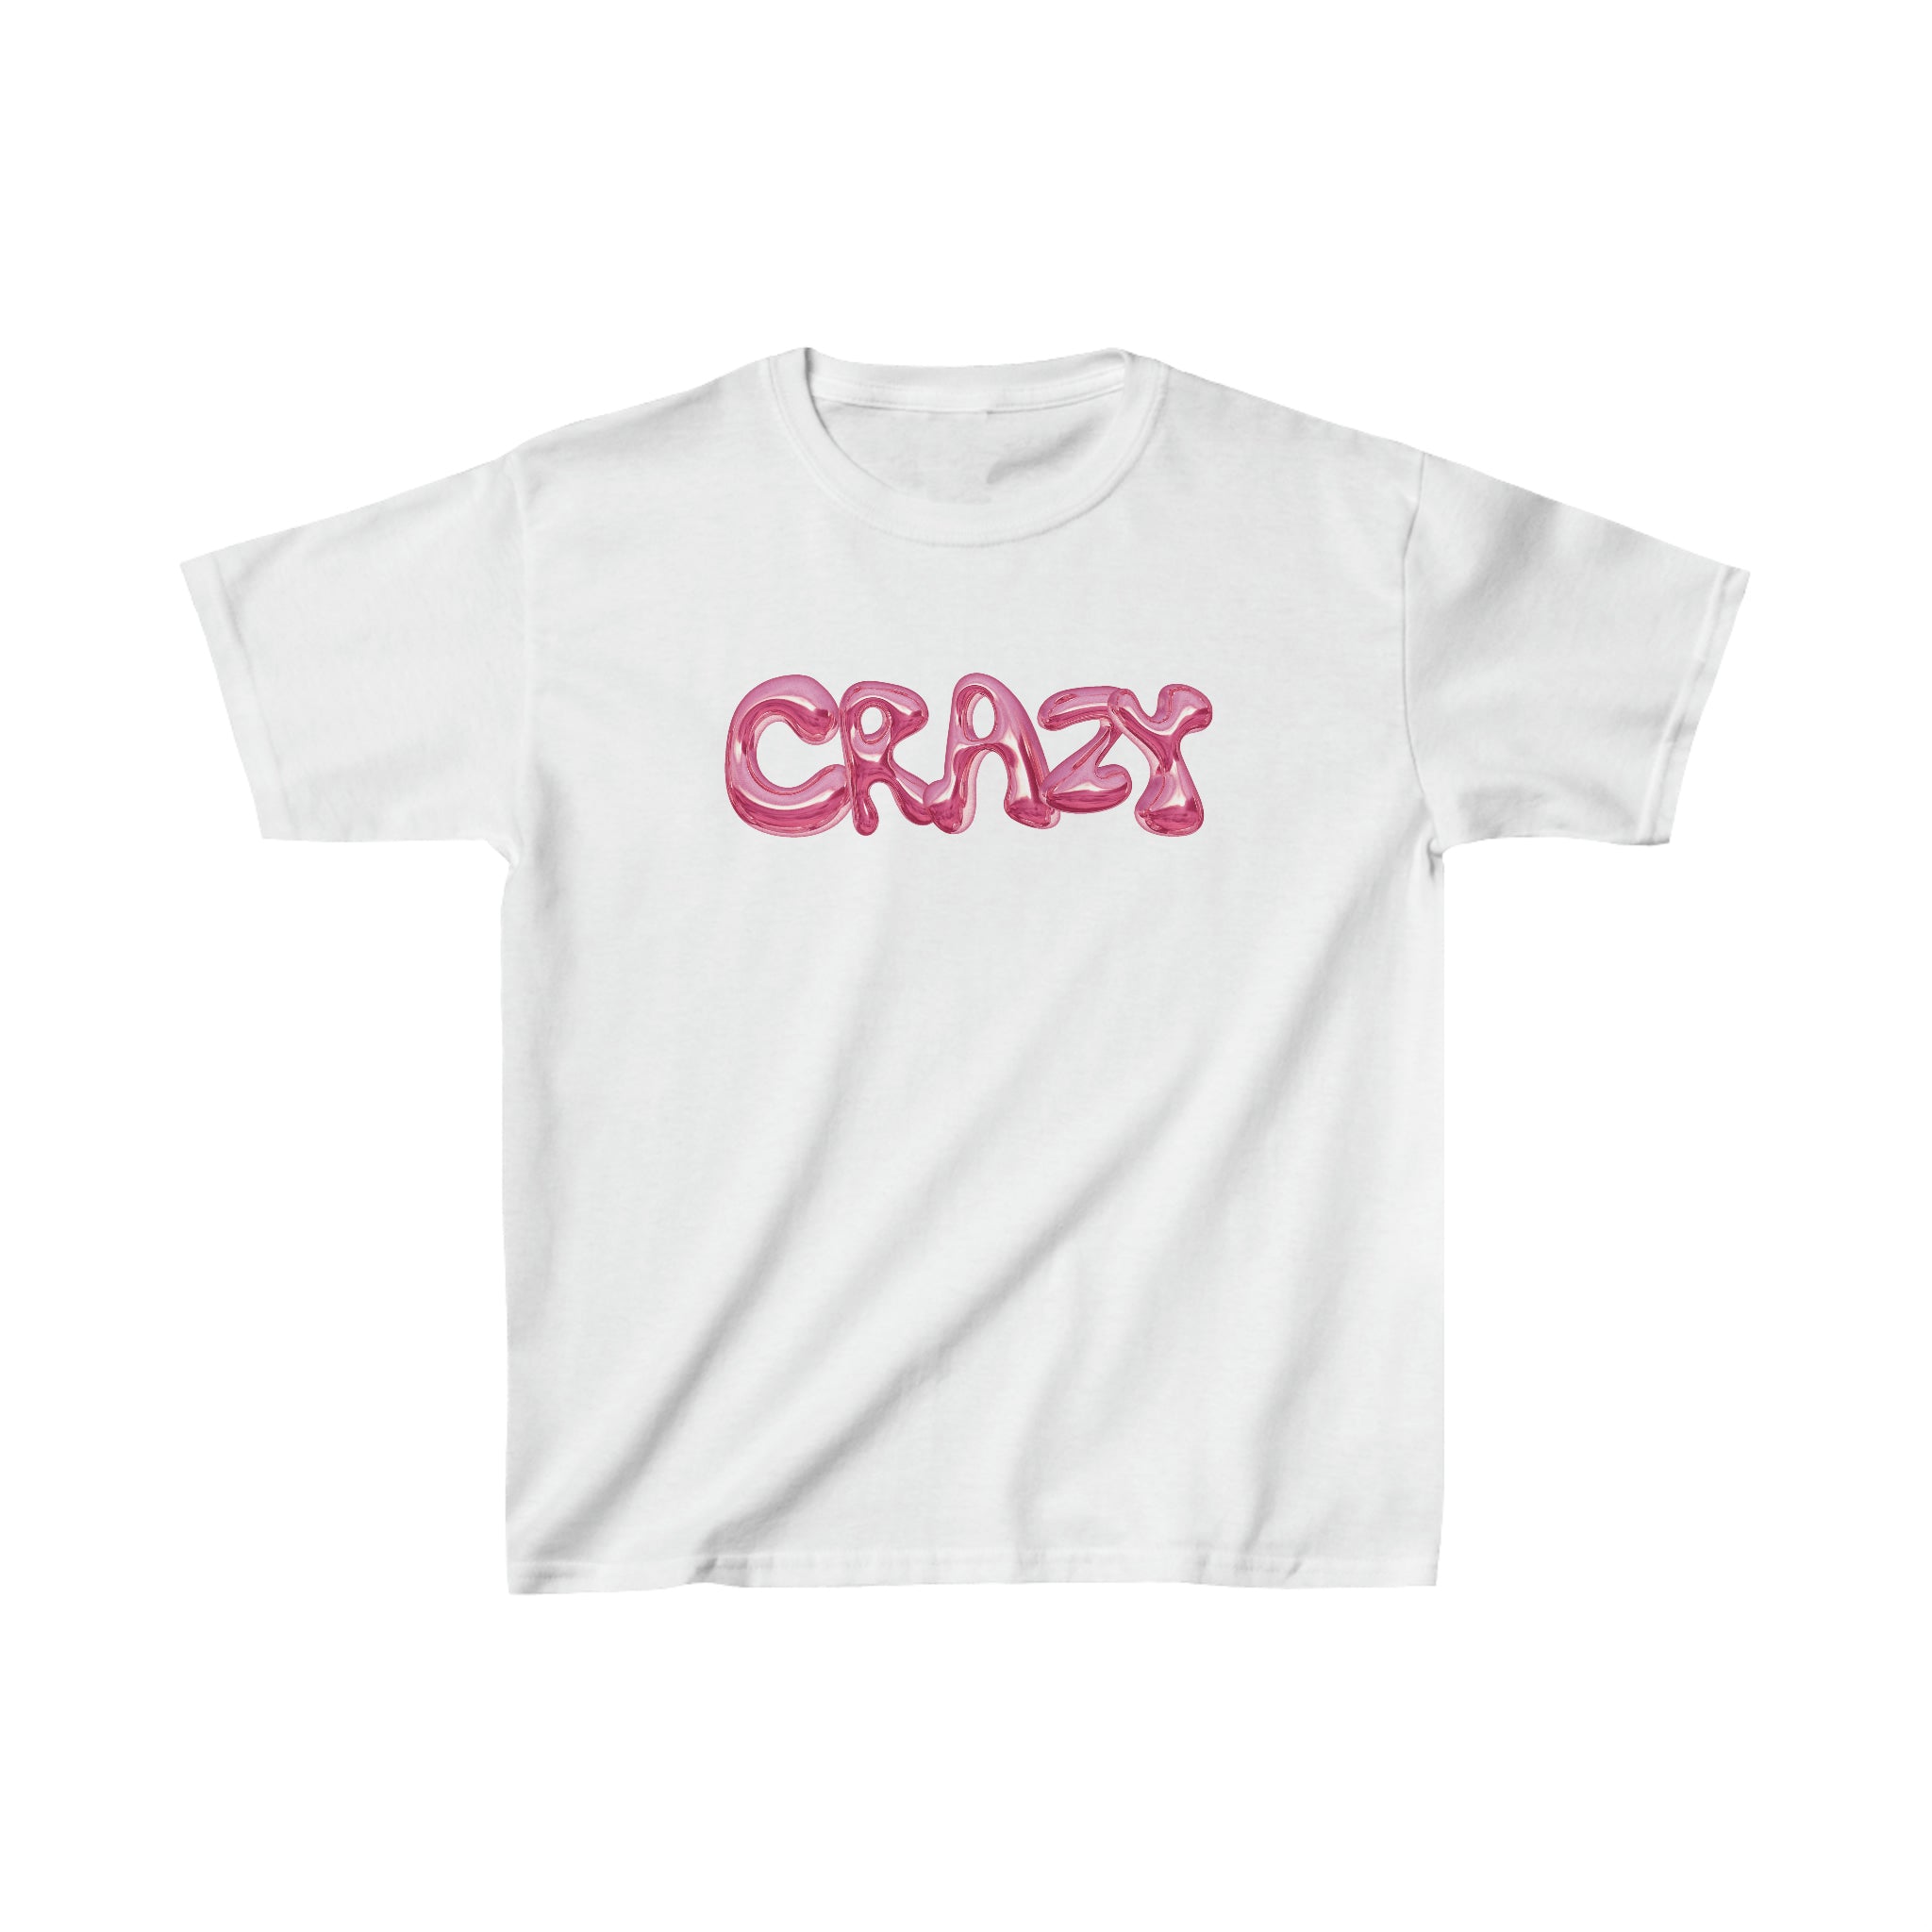 'CRAZY' baby tee - In Print We Trust